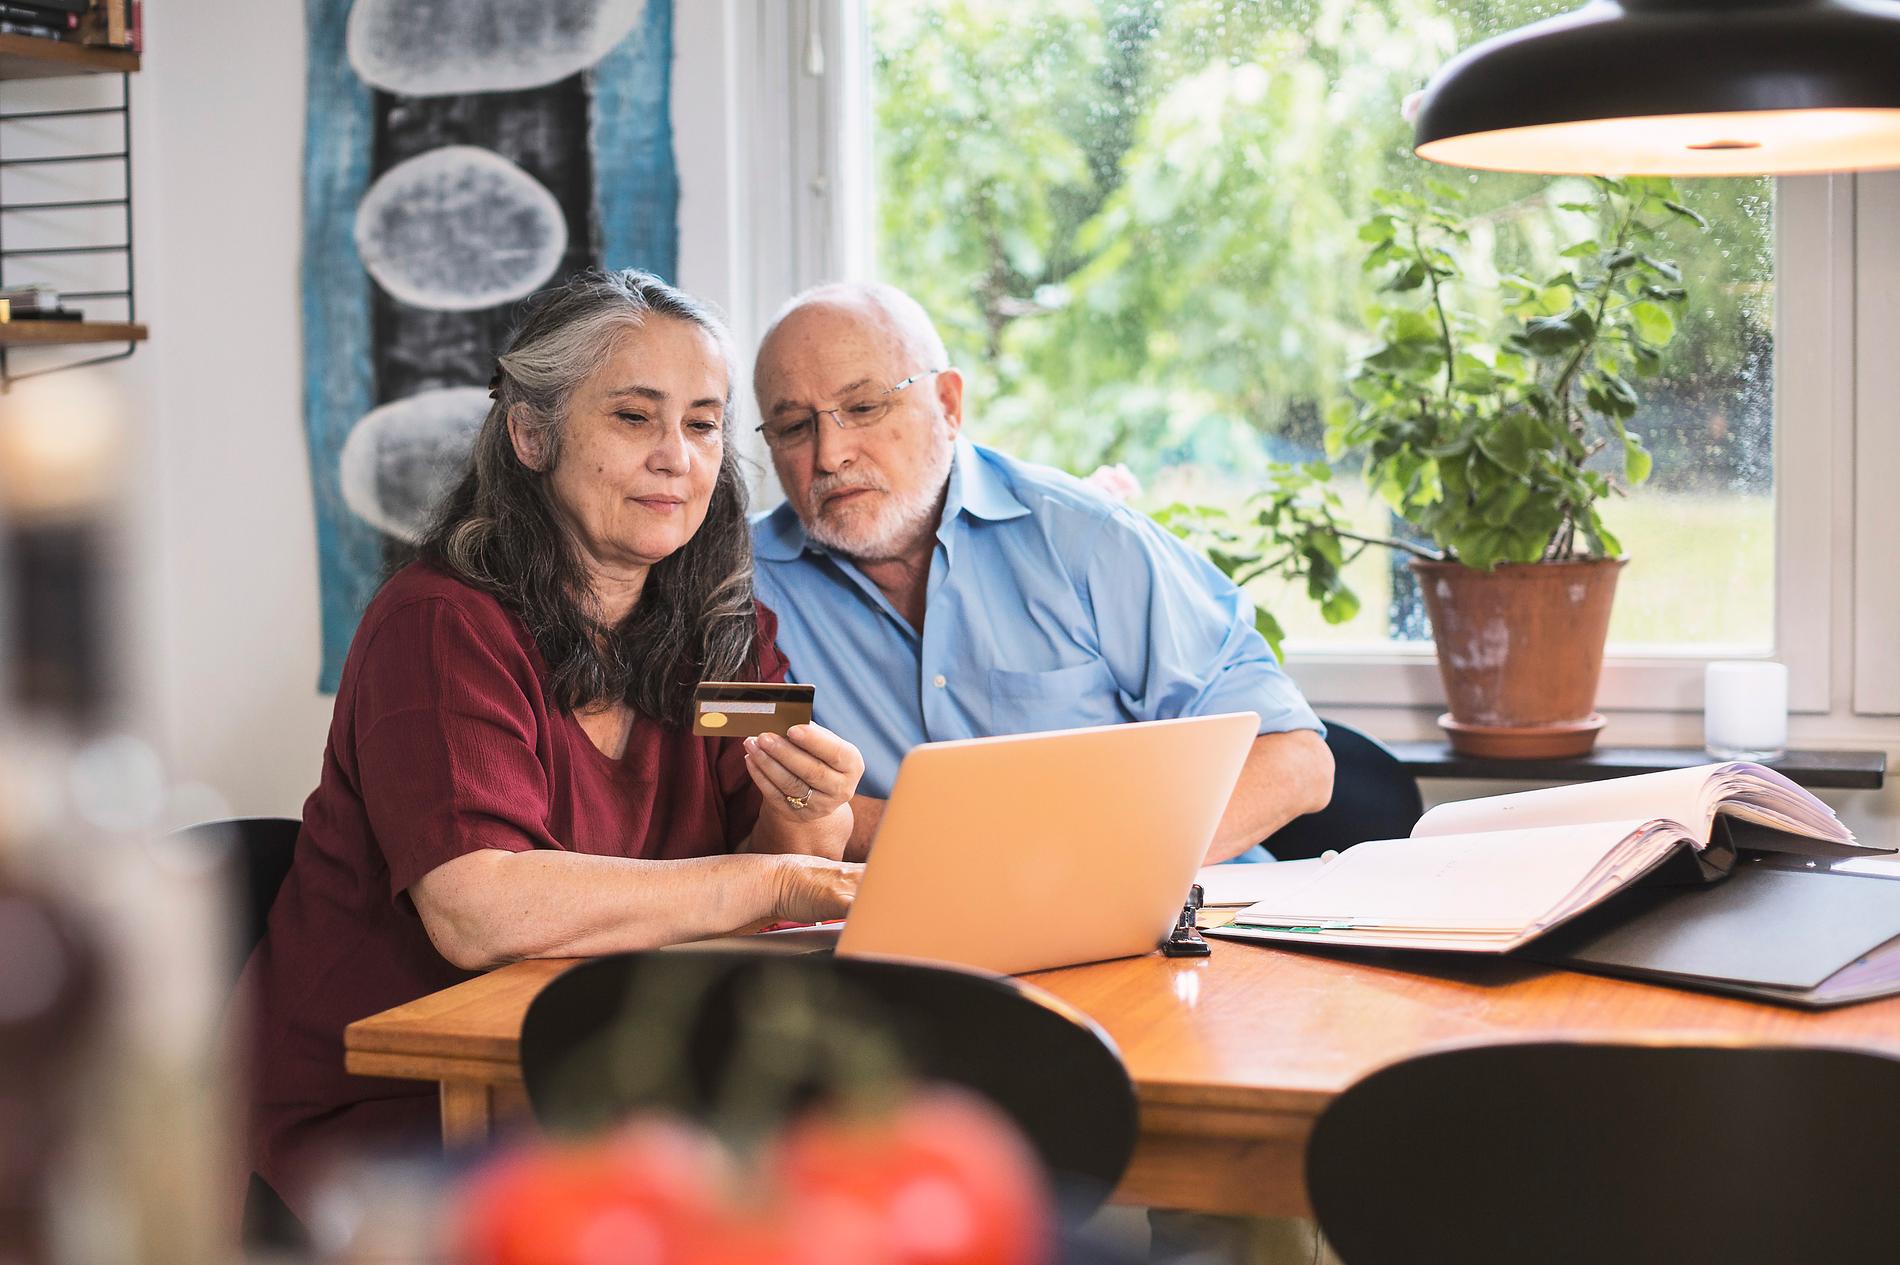 Hitta klippet på nätet. På sajter som Pensionärsrabatt och Smart senior finns massor av pensionärsrabatter samlade.